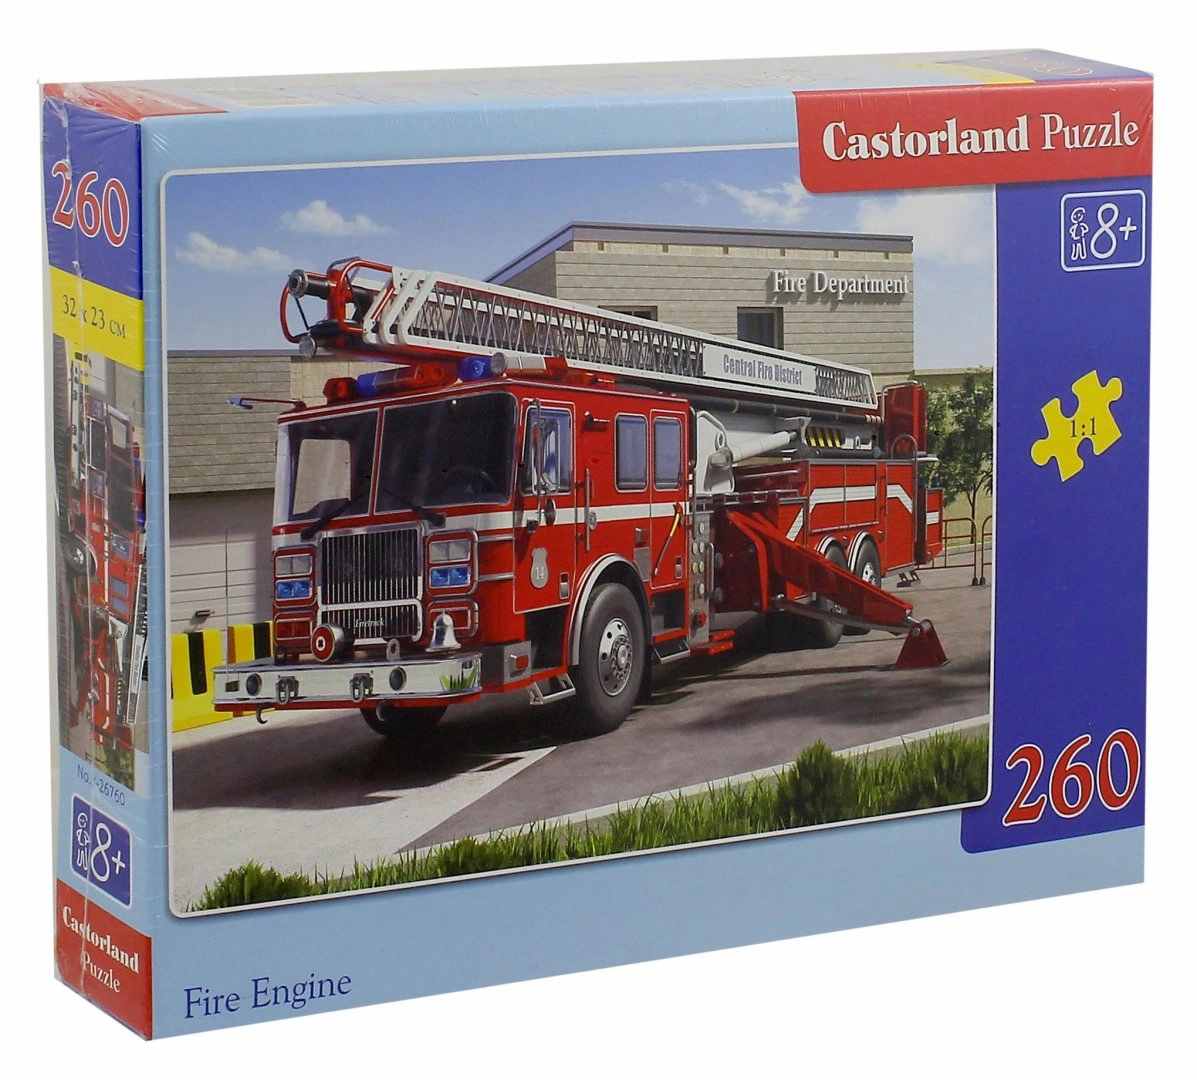 Пазл пожарный. Пазлы Castorland Puzzle 260 машина. Castorland Puzzle пожарная машина. Пазл Castorland 260 пожарная машина. Пазл Castorland Fire engine (b-12831), 120 дет..